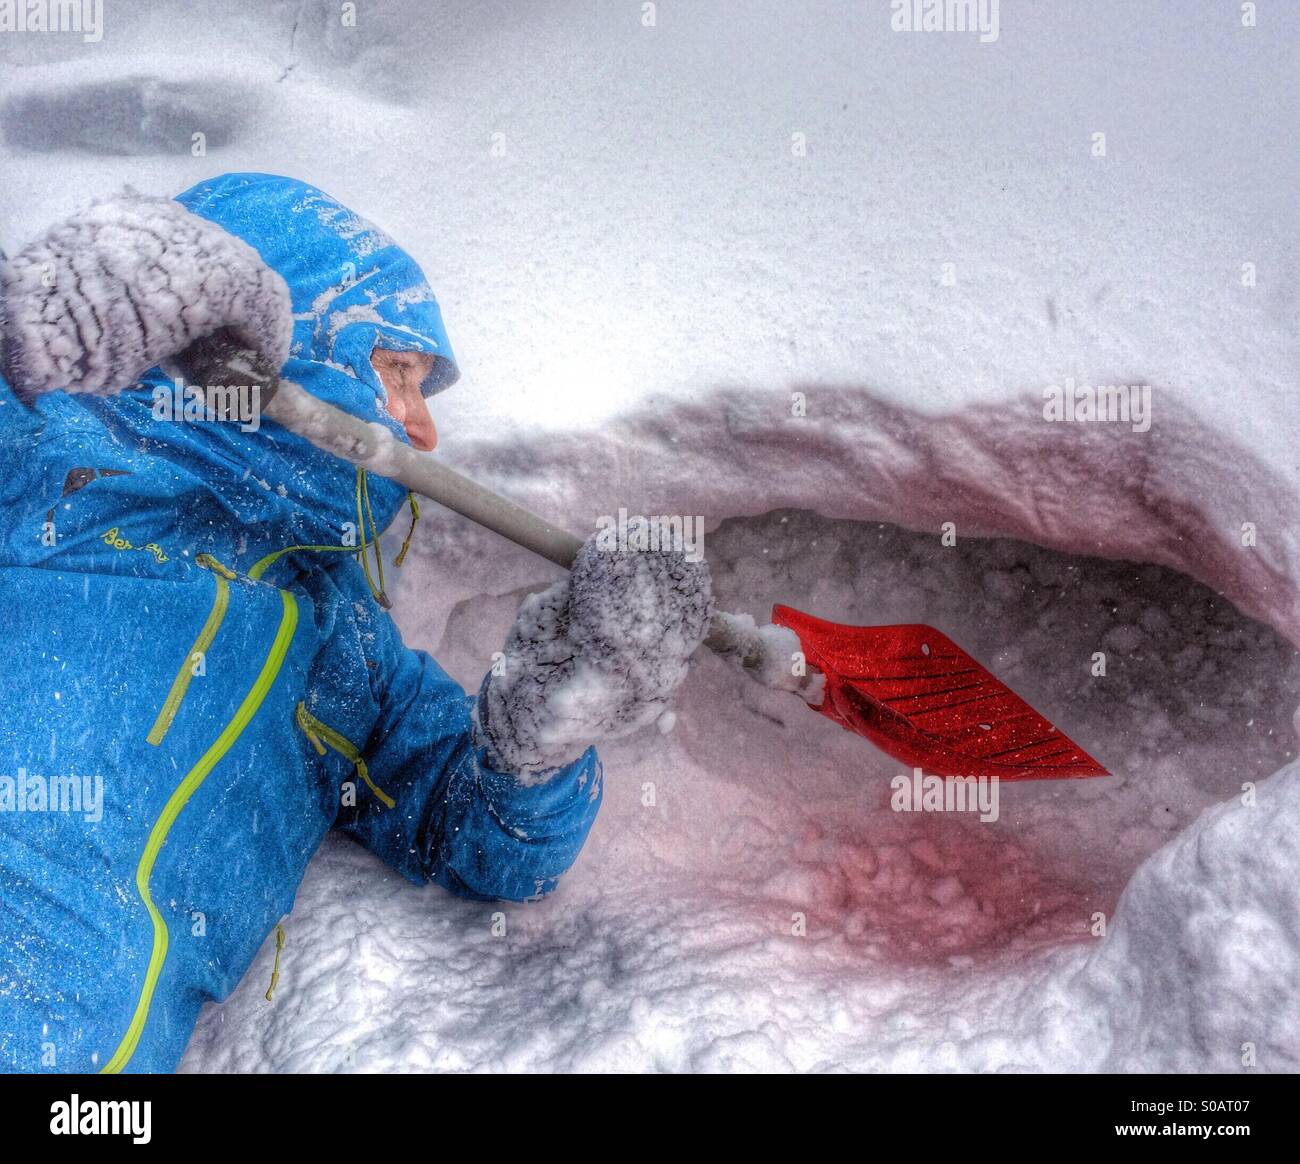 Graben einen Schnee Schutz für einen Schneesturm zu verstecken. Stockfoto